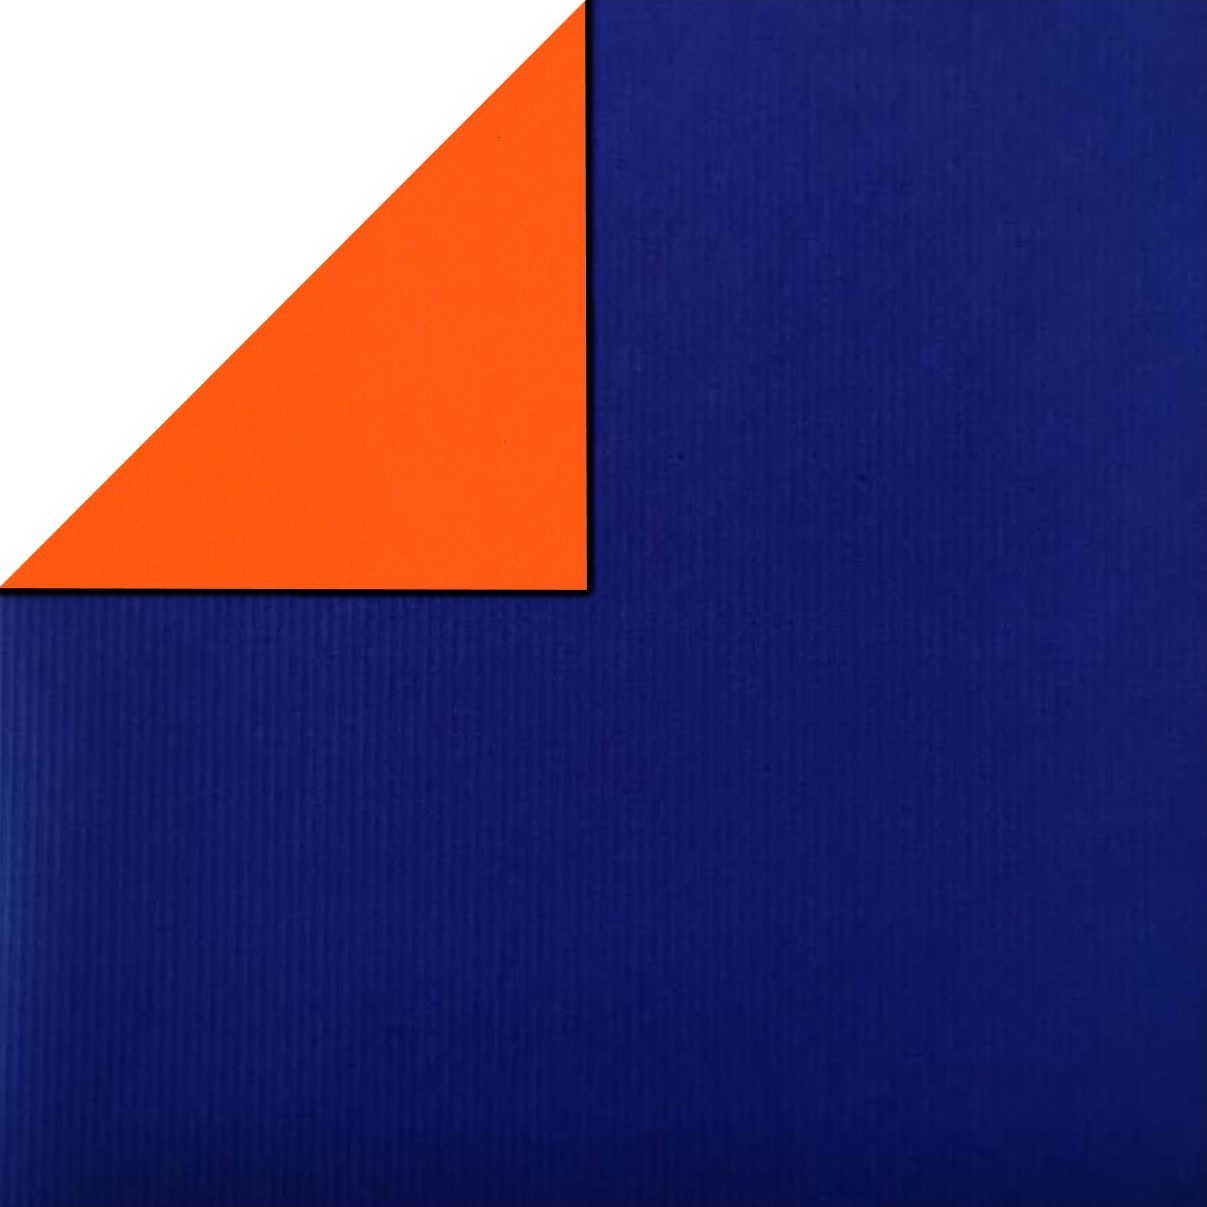 Geschenkpapier auf der Vorderseite Königsblau, auf der Rückseite orange mit gepressten Streifen, Rollen à 50 Meter, wählen Sie mindestens 4 Artikel in einer Sortimentsbox.
 